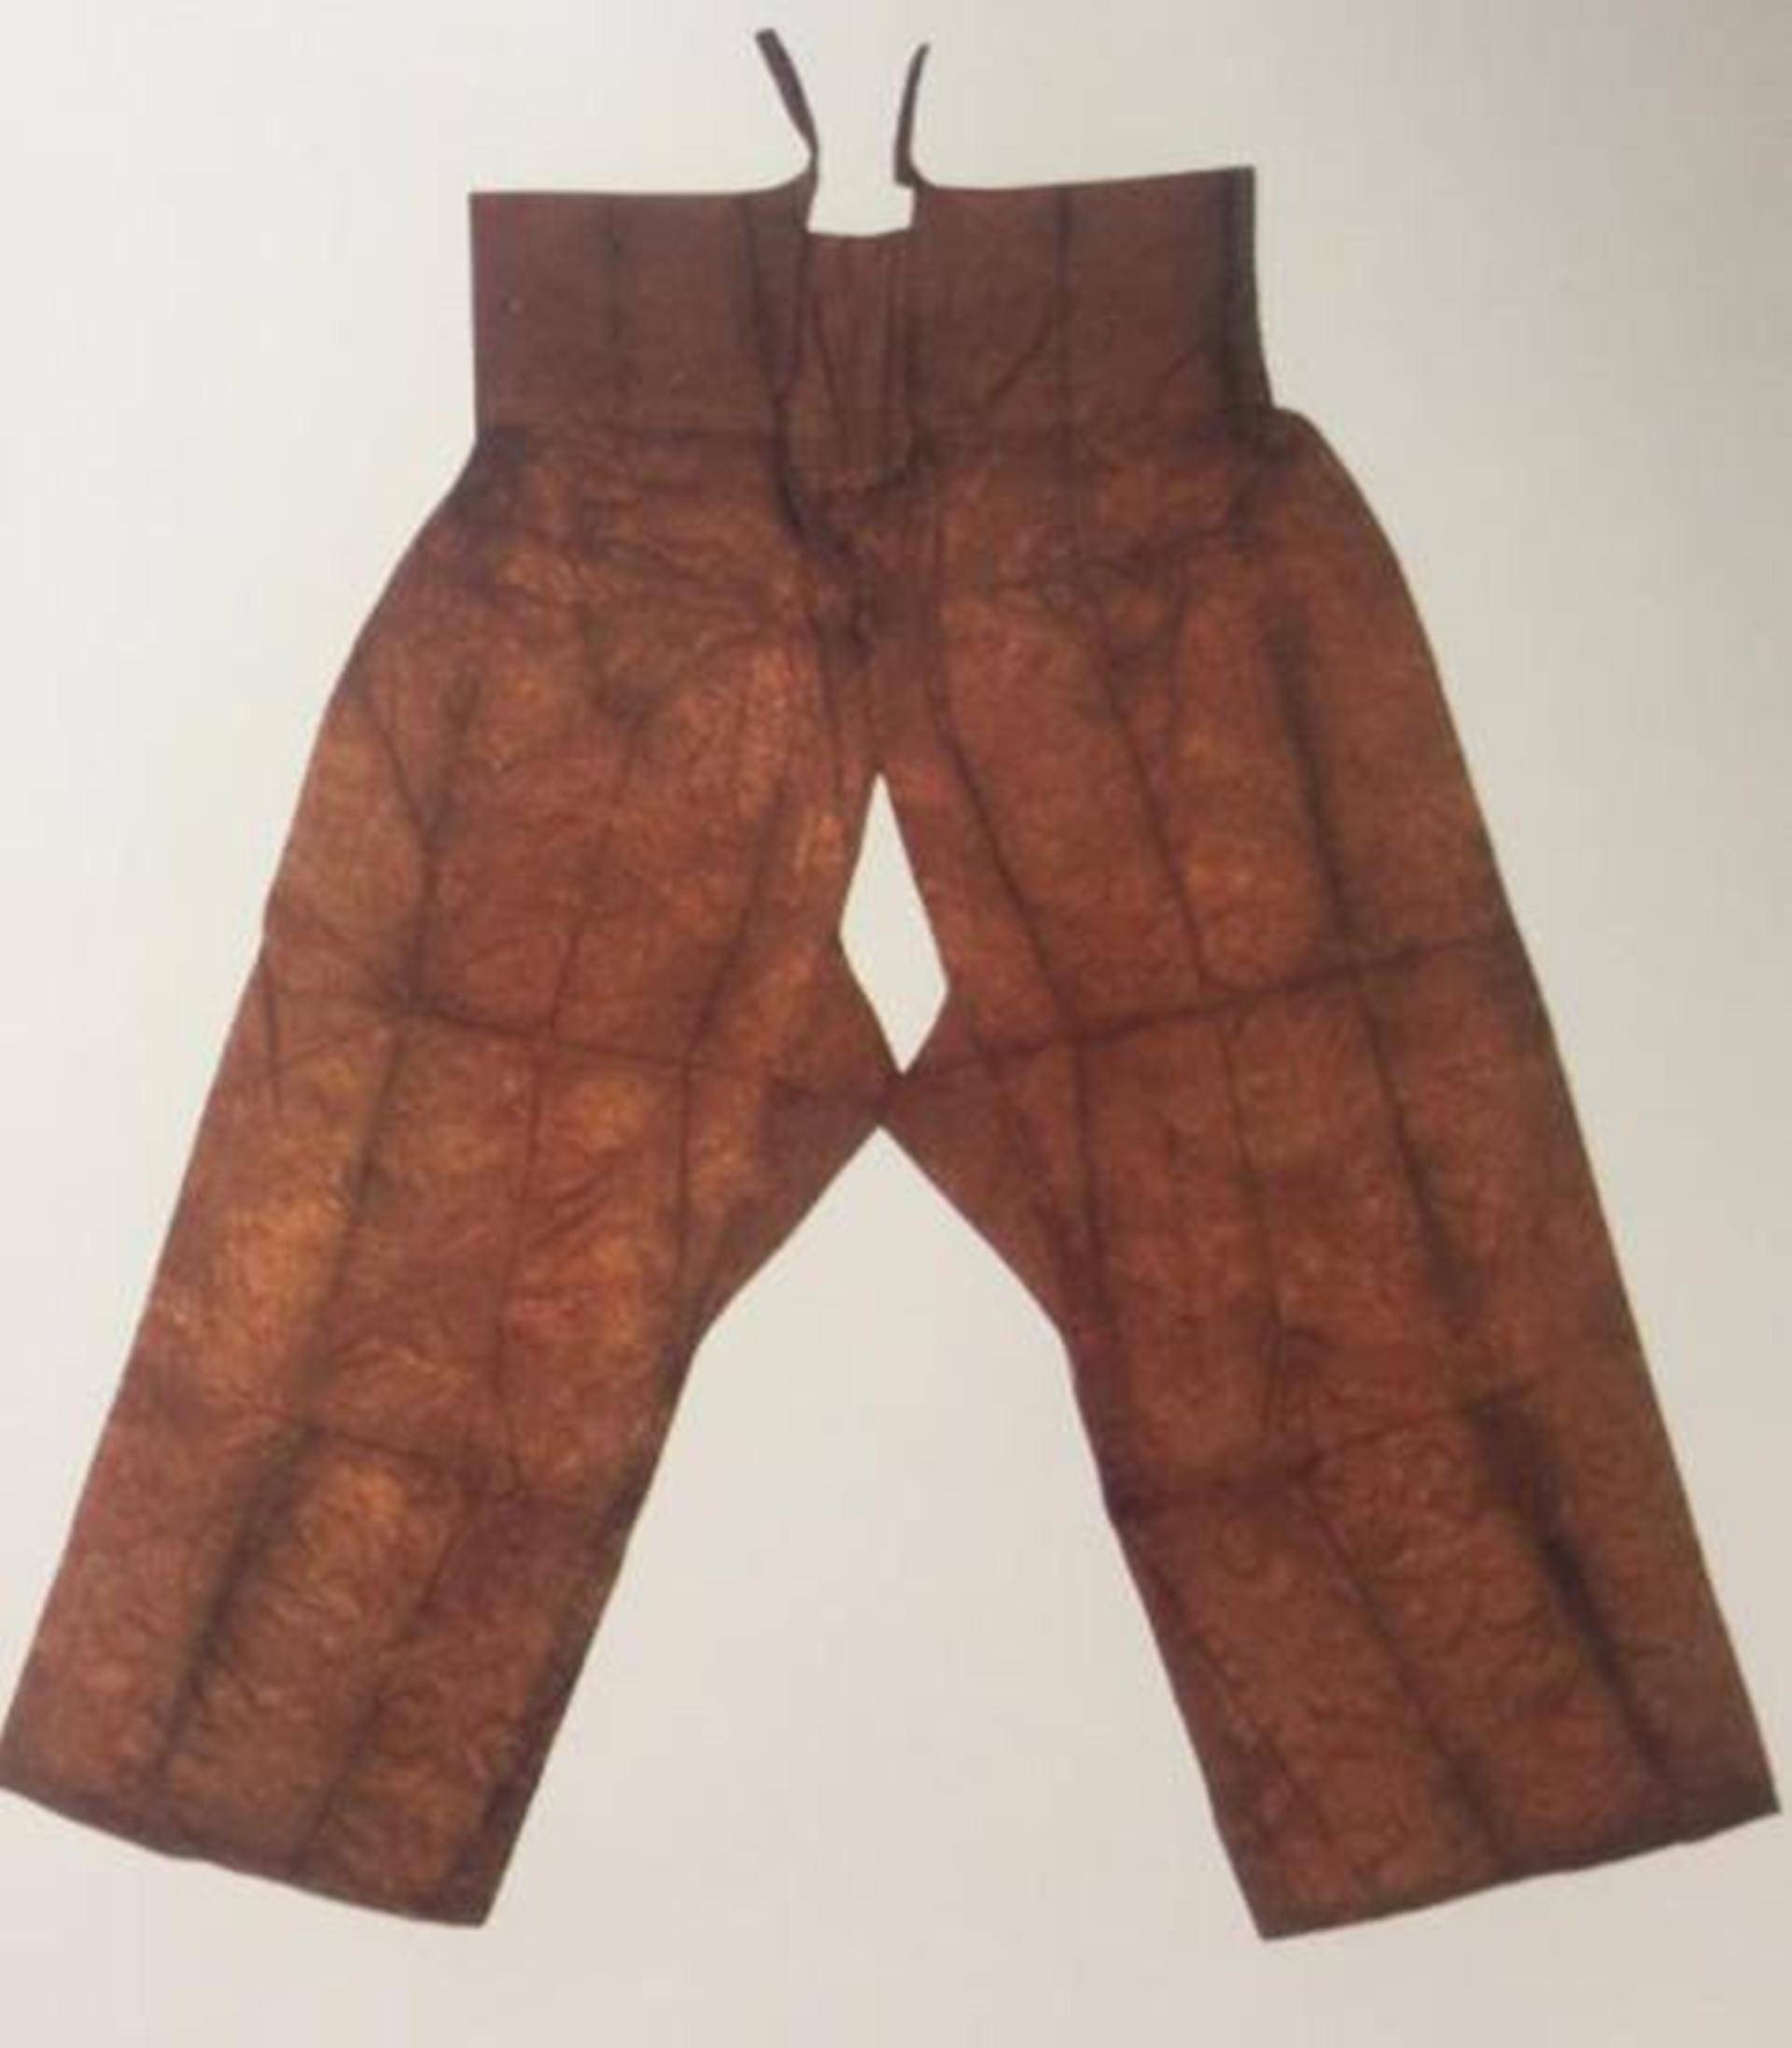 古代裤子的样式图片